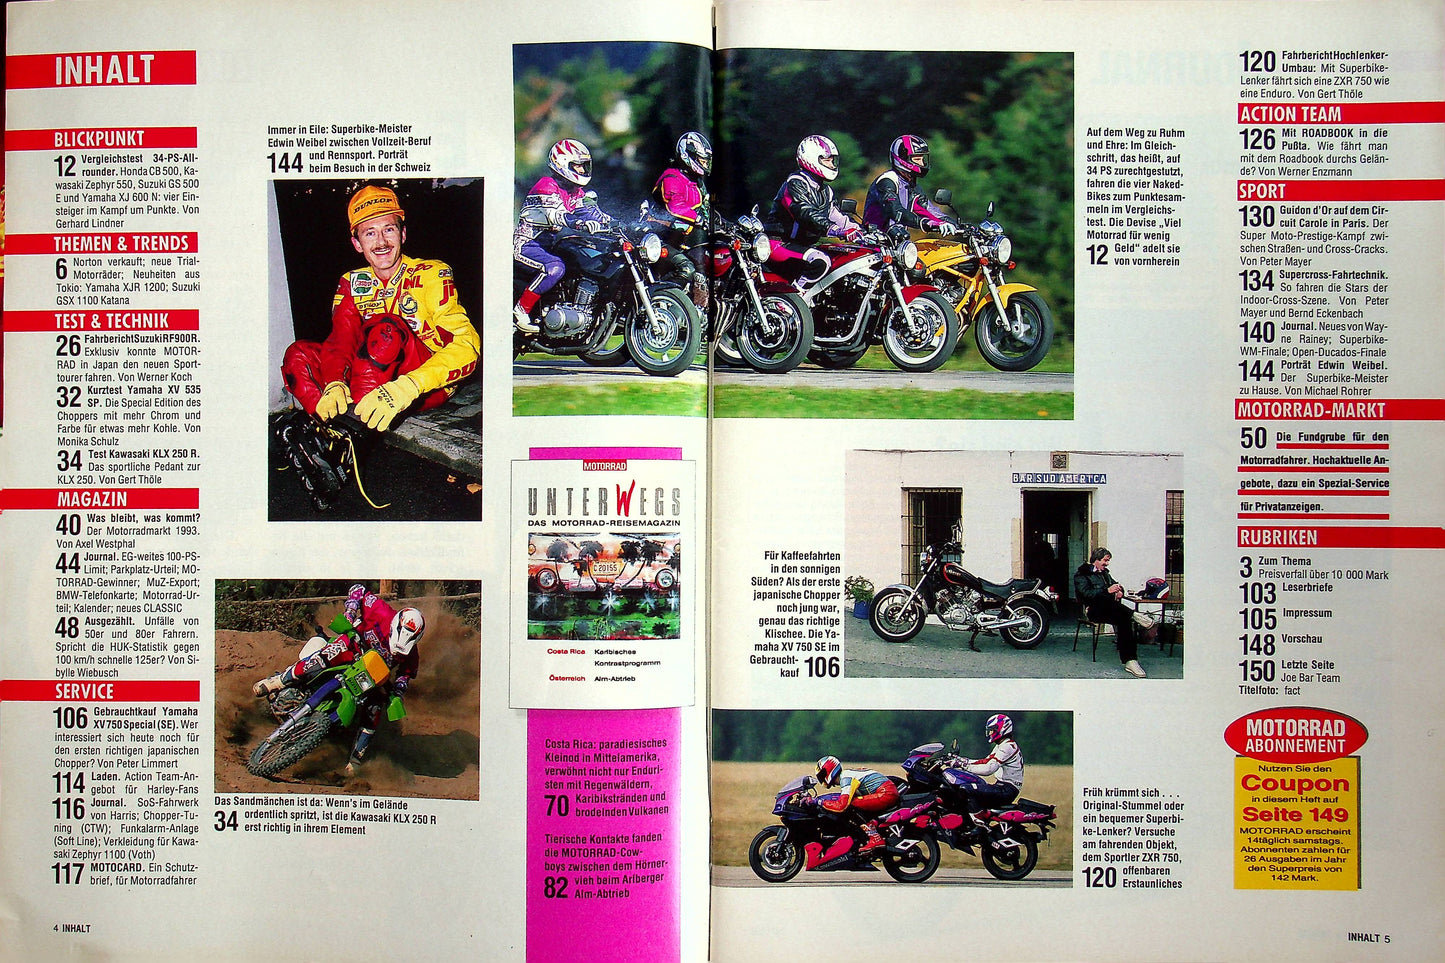 Motorrad 24/1993